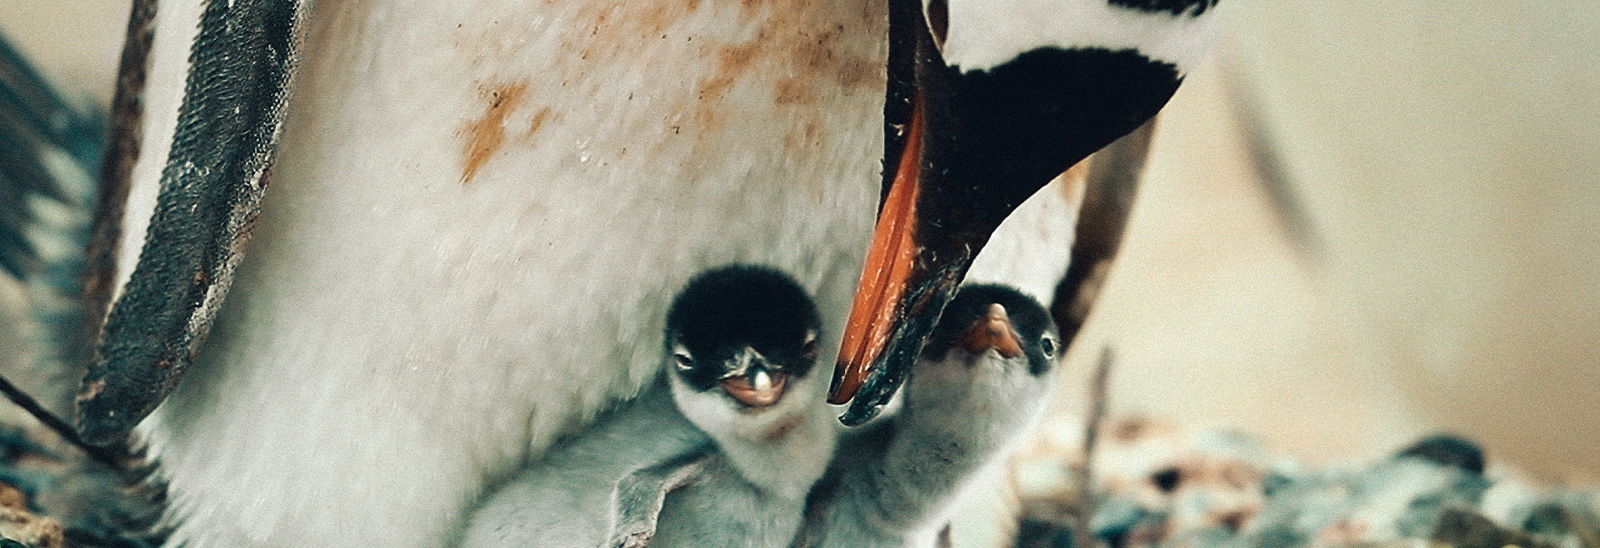 Familia de pingüinos